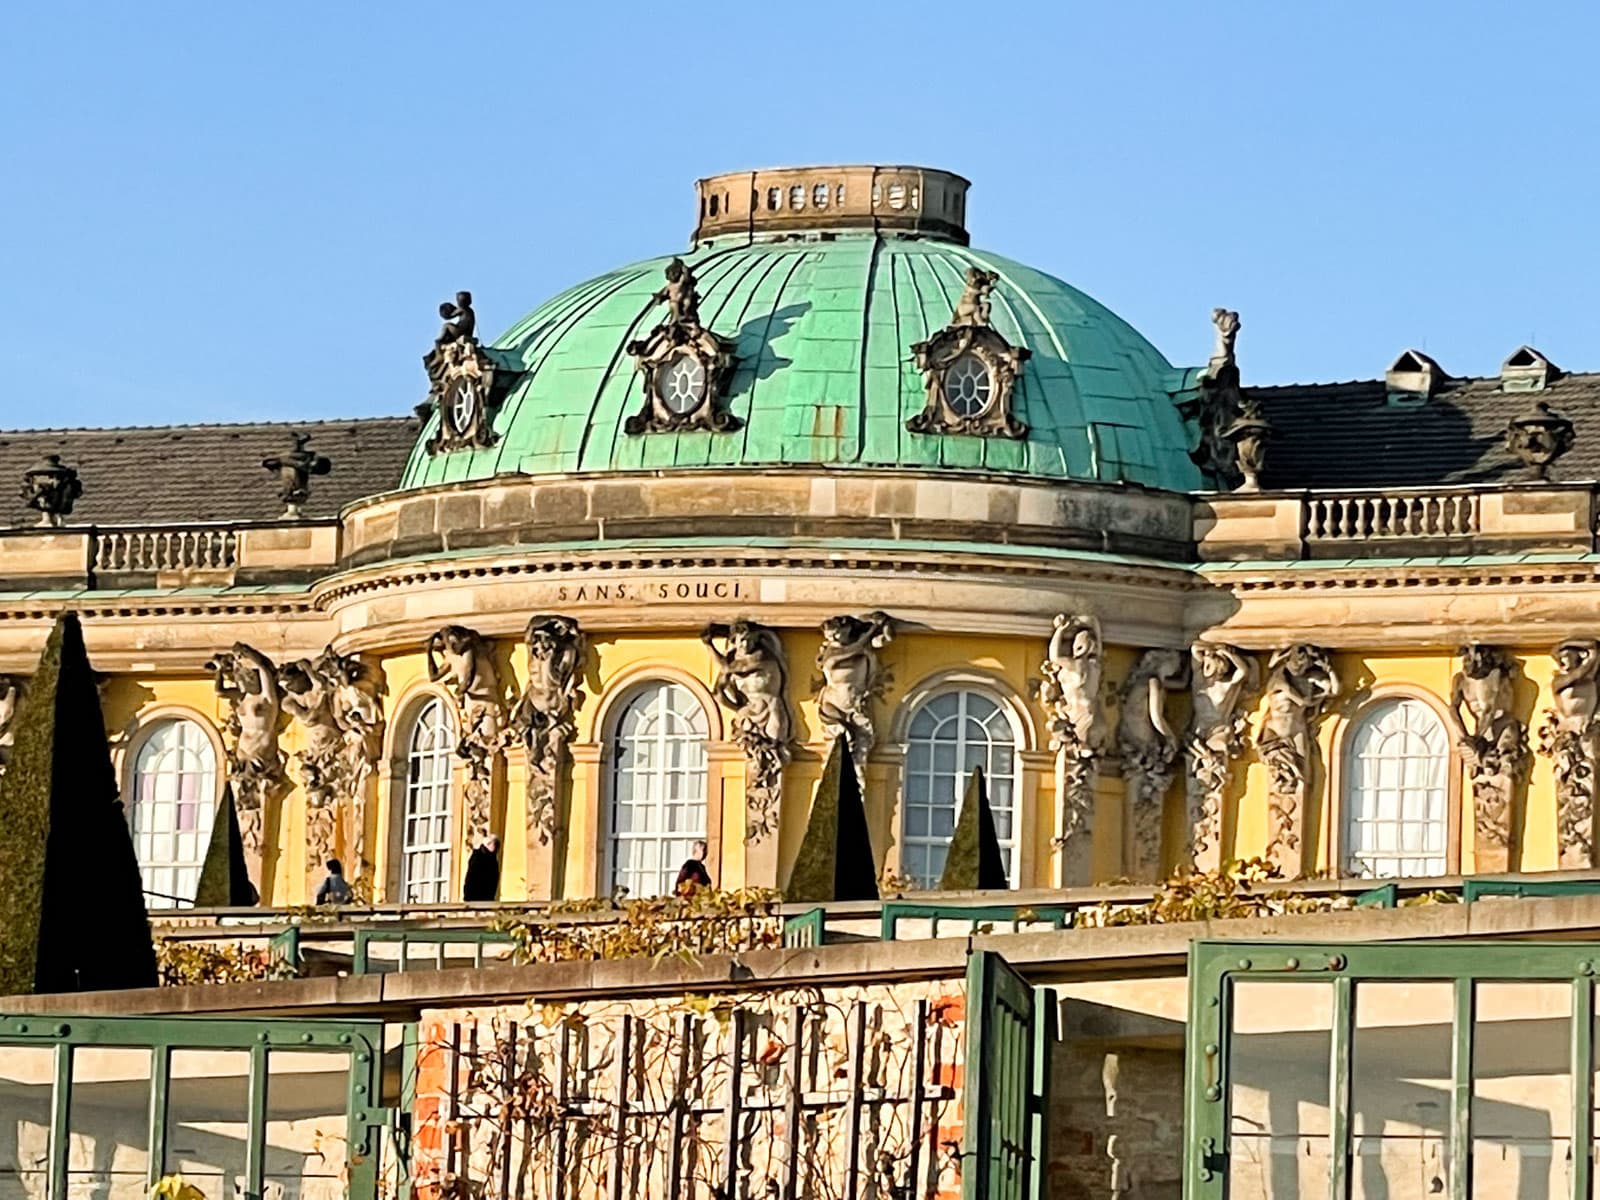 Sanssouci palace in Potsdam